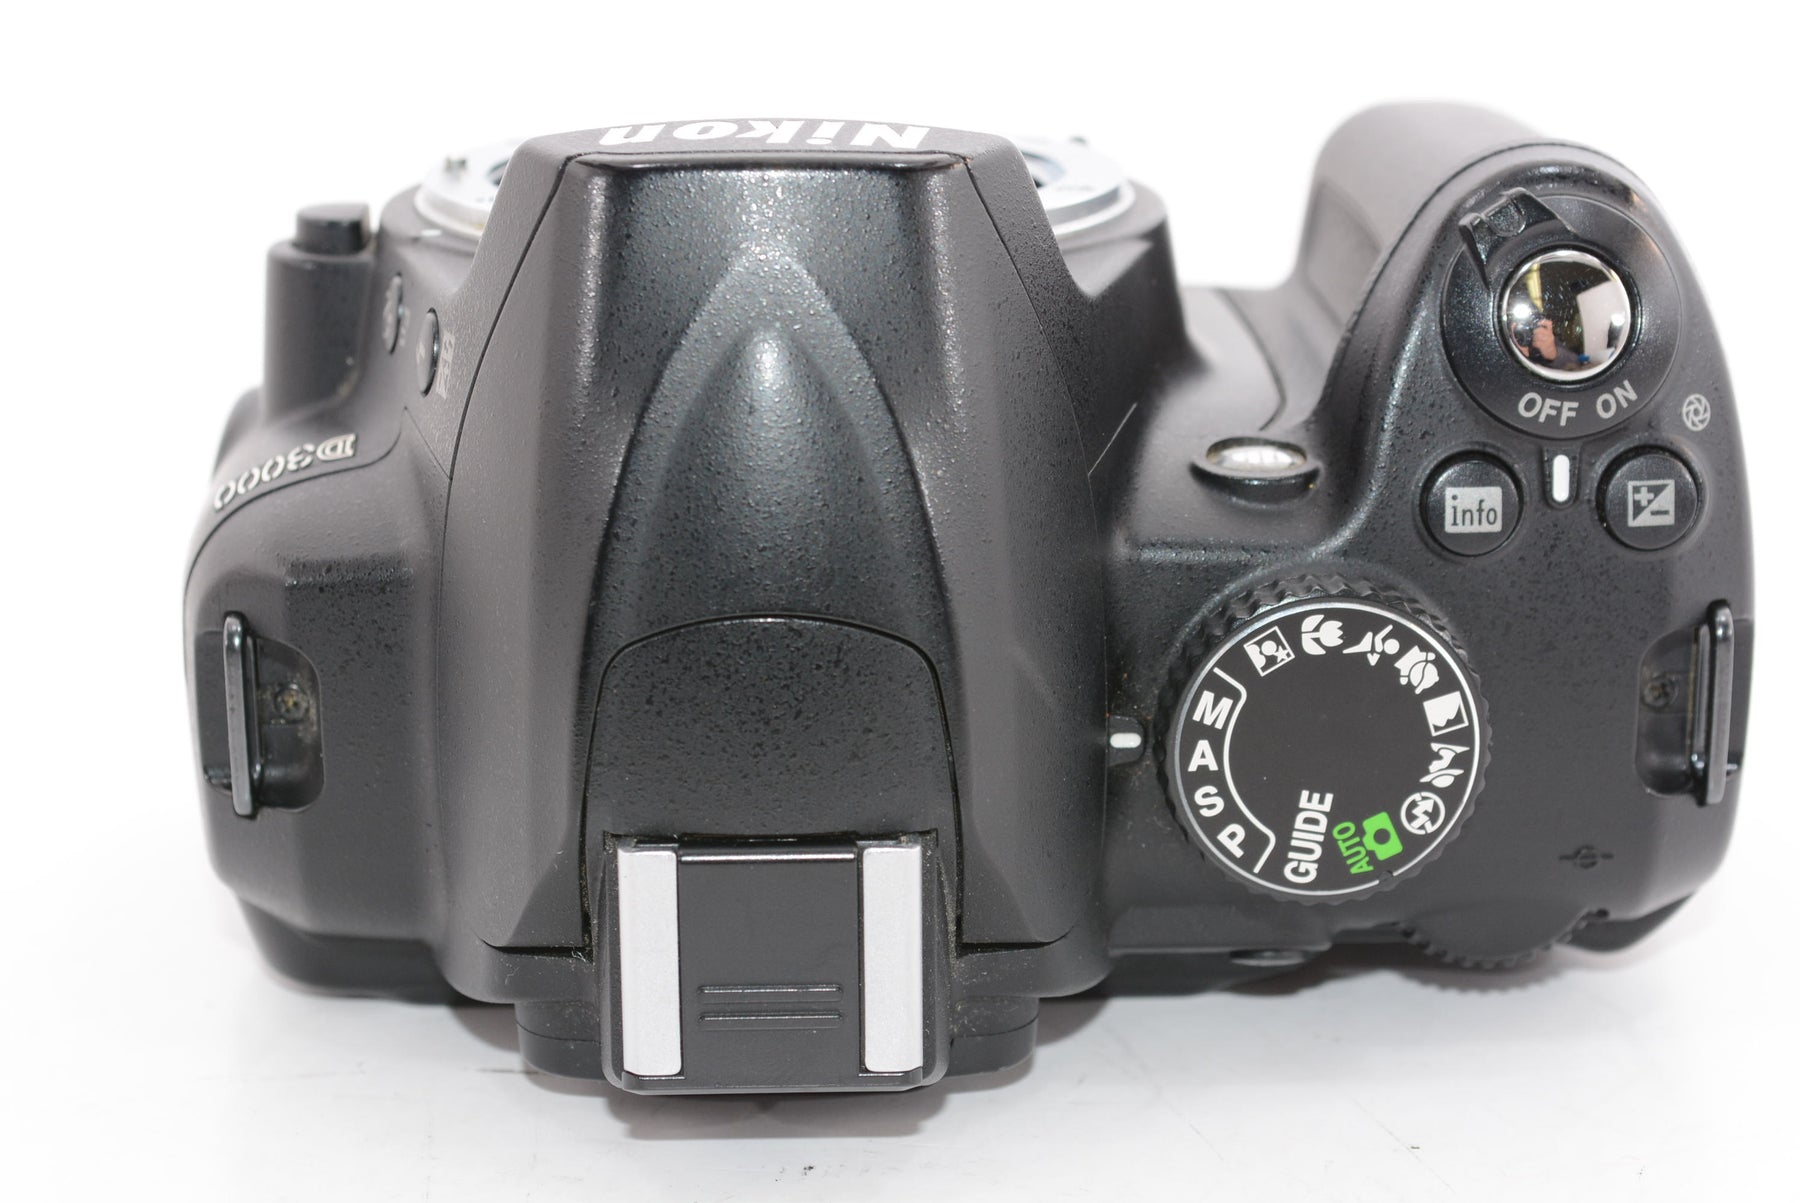 【外観並級】Nikon デジタル一眼レフカメラ D3000 ボディ